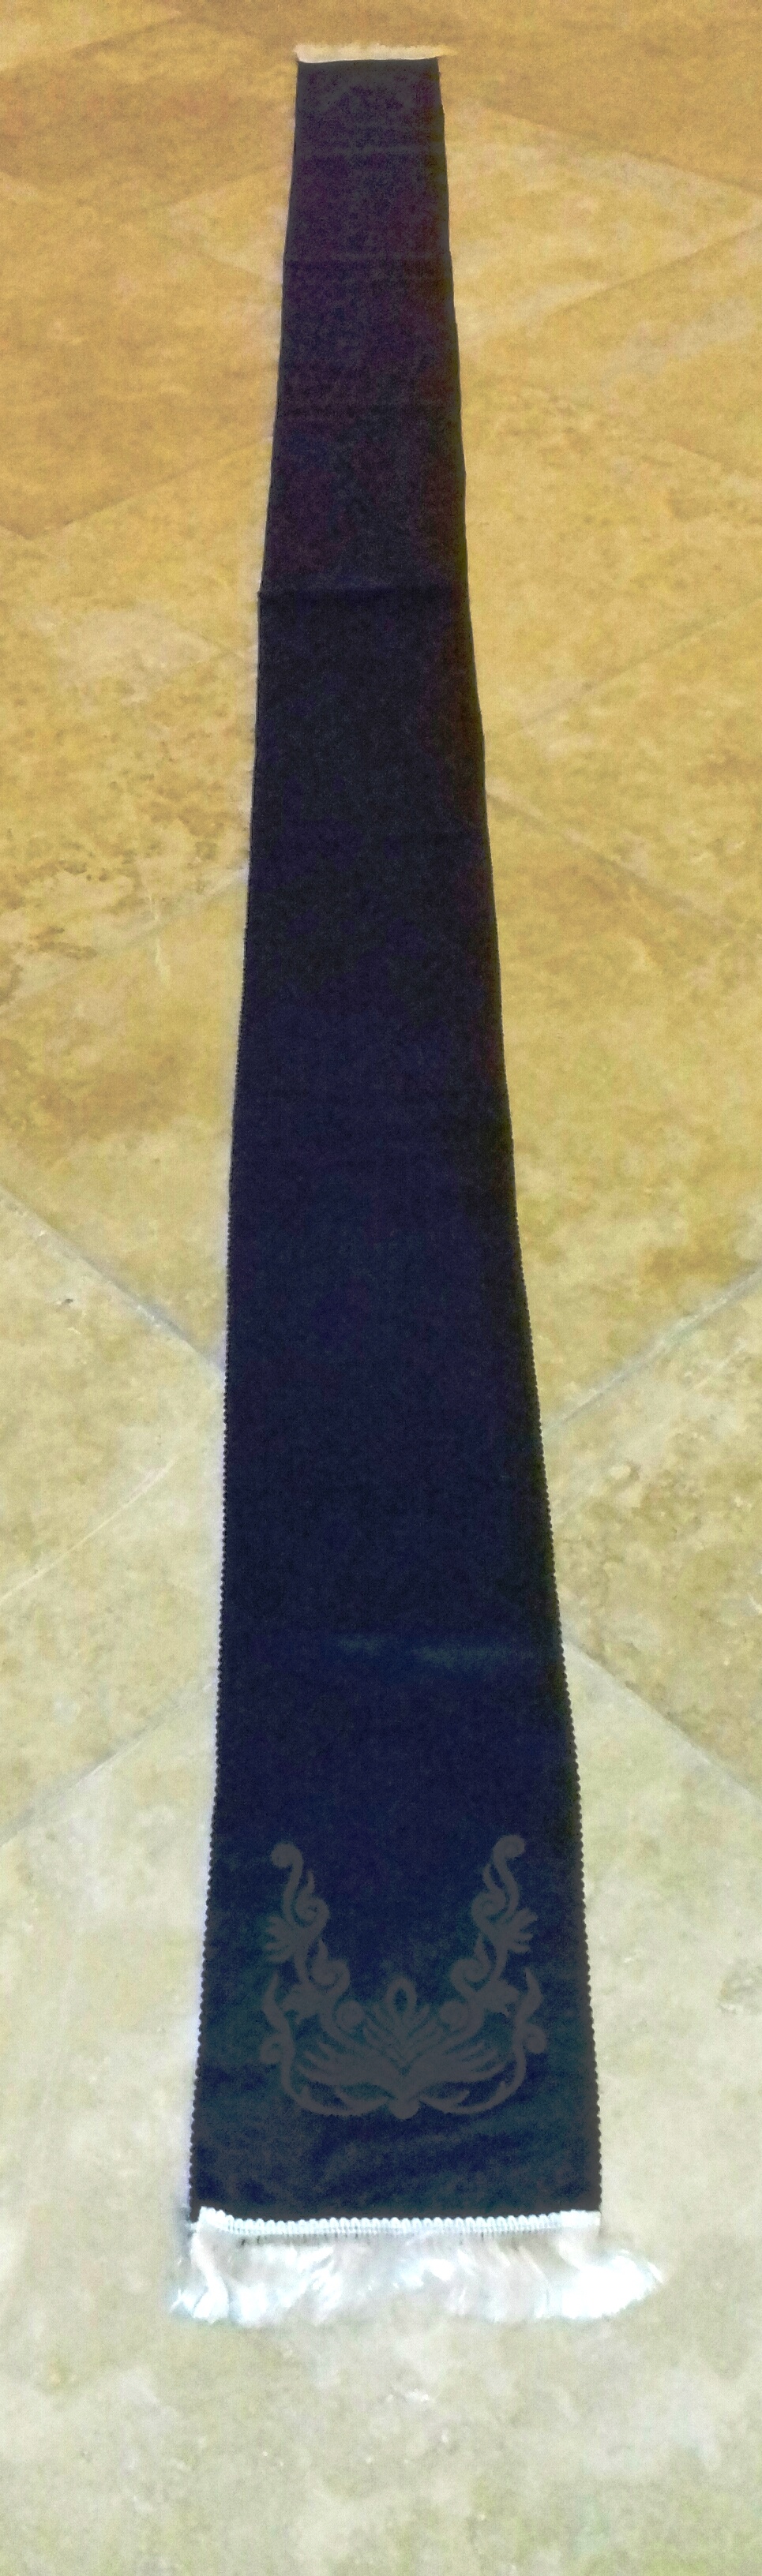 Gyászhuszár vállszalag - fekete, sötétszürke fehér vasalt mintával (Nemzeti Örökség Intézete – Kegyeleti Múzeum CC BY-NC-SA)